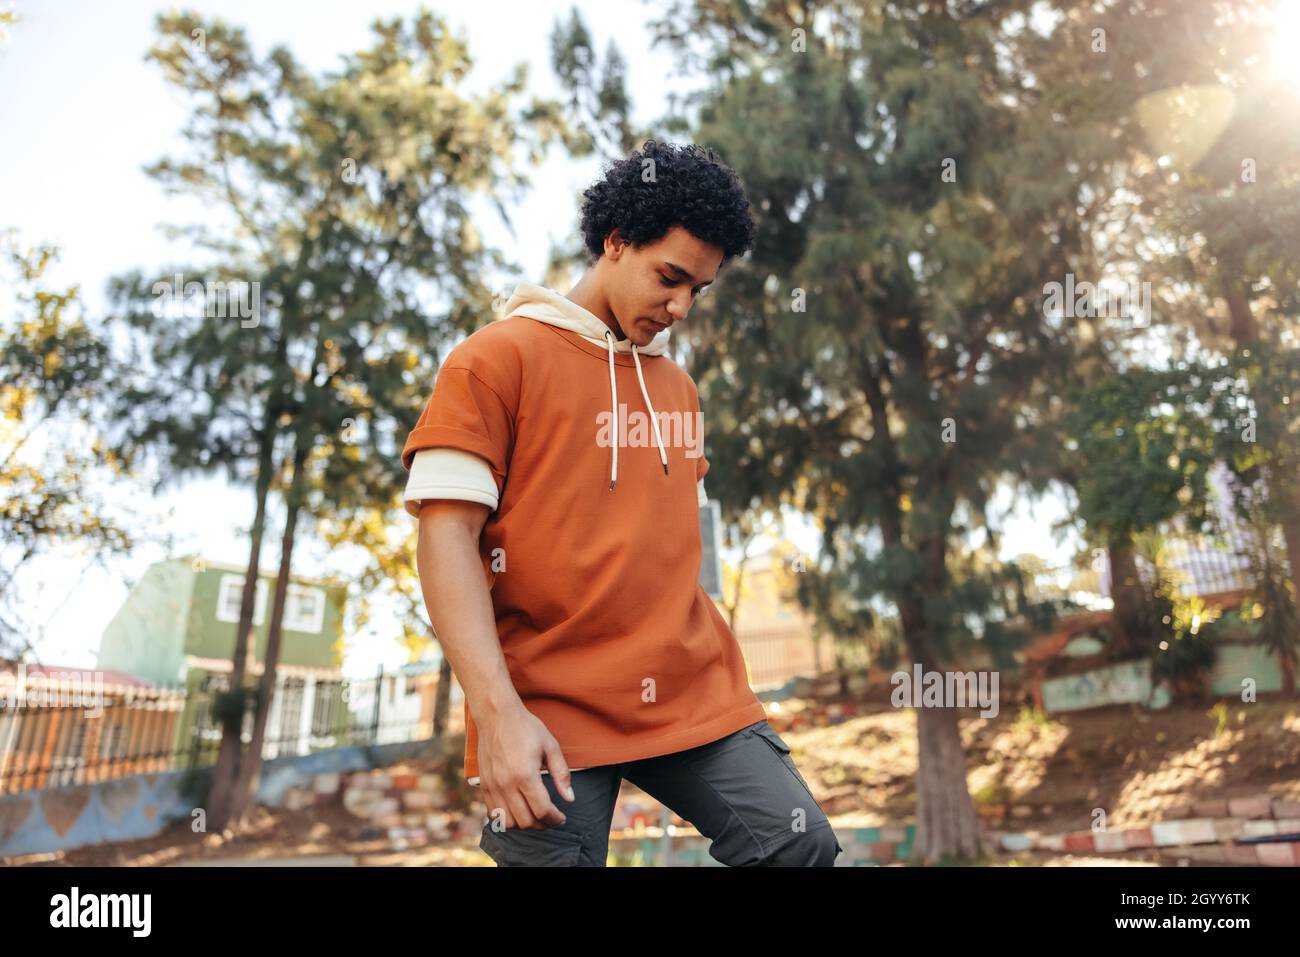 Adolescent sportif jouant avec son skateboard dans un parc urbain.Skateboarder insouciant debout seul à l'extérieur pendant la journée.Skateboard pour adolescent Banque D'Images